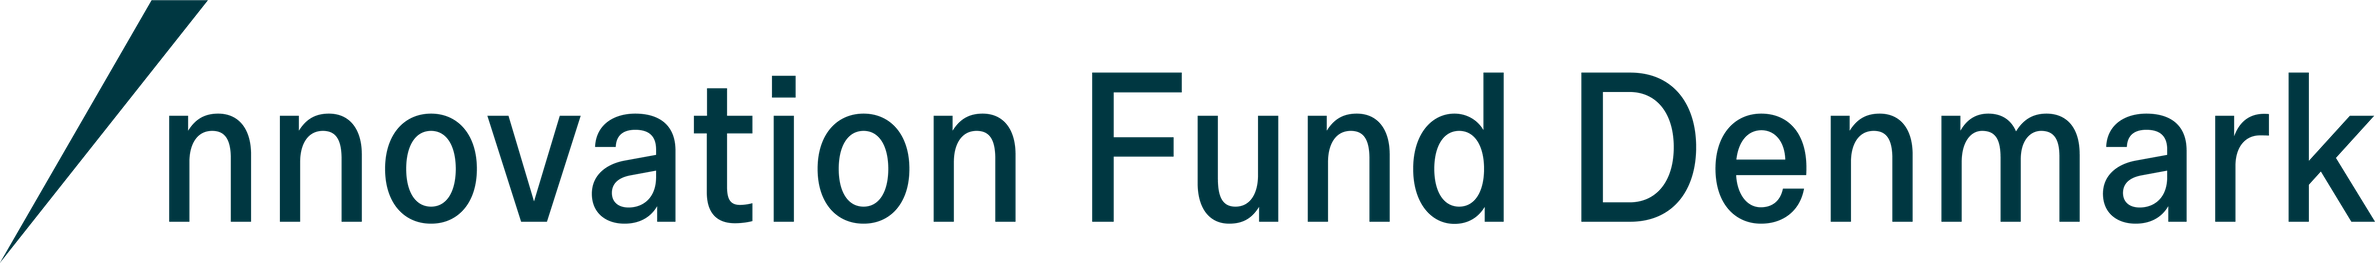 Innovation Fund Denmark Logo